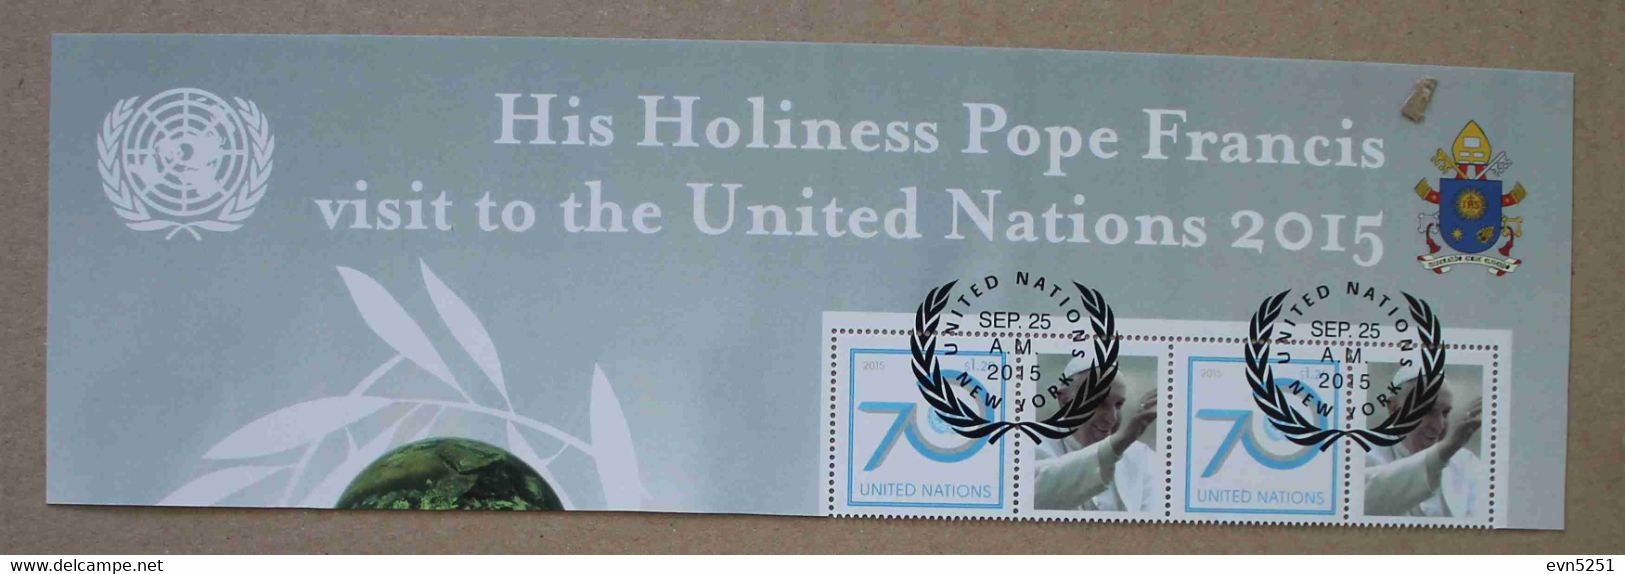 UN-NY01 : Nations Unies (N-Y), Sa Sainteté Le Pape François Visite Les Nations Unies En 2015 - Oblitérés